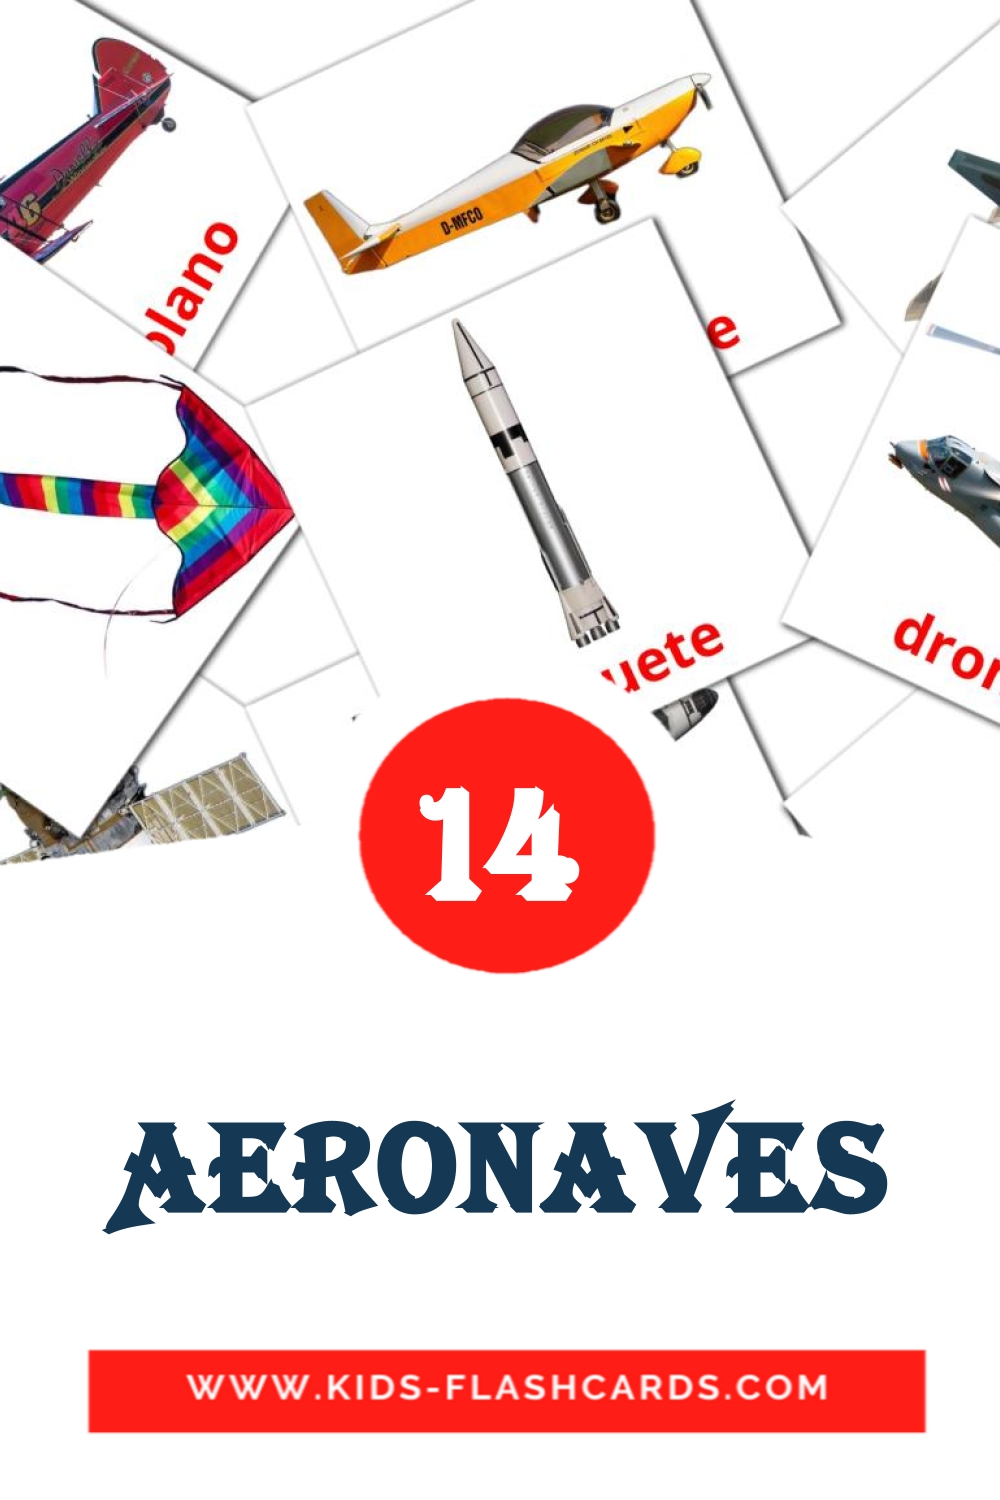 14 Cartões com Imagens de Aeronaves para Jardim de Infância em português